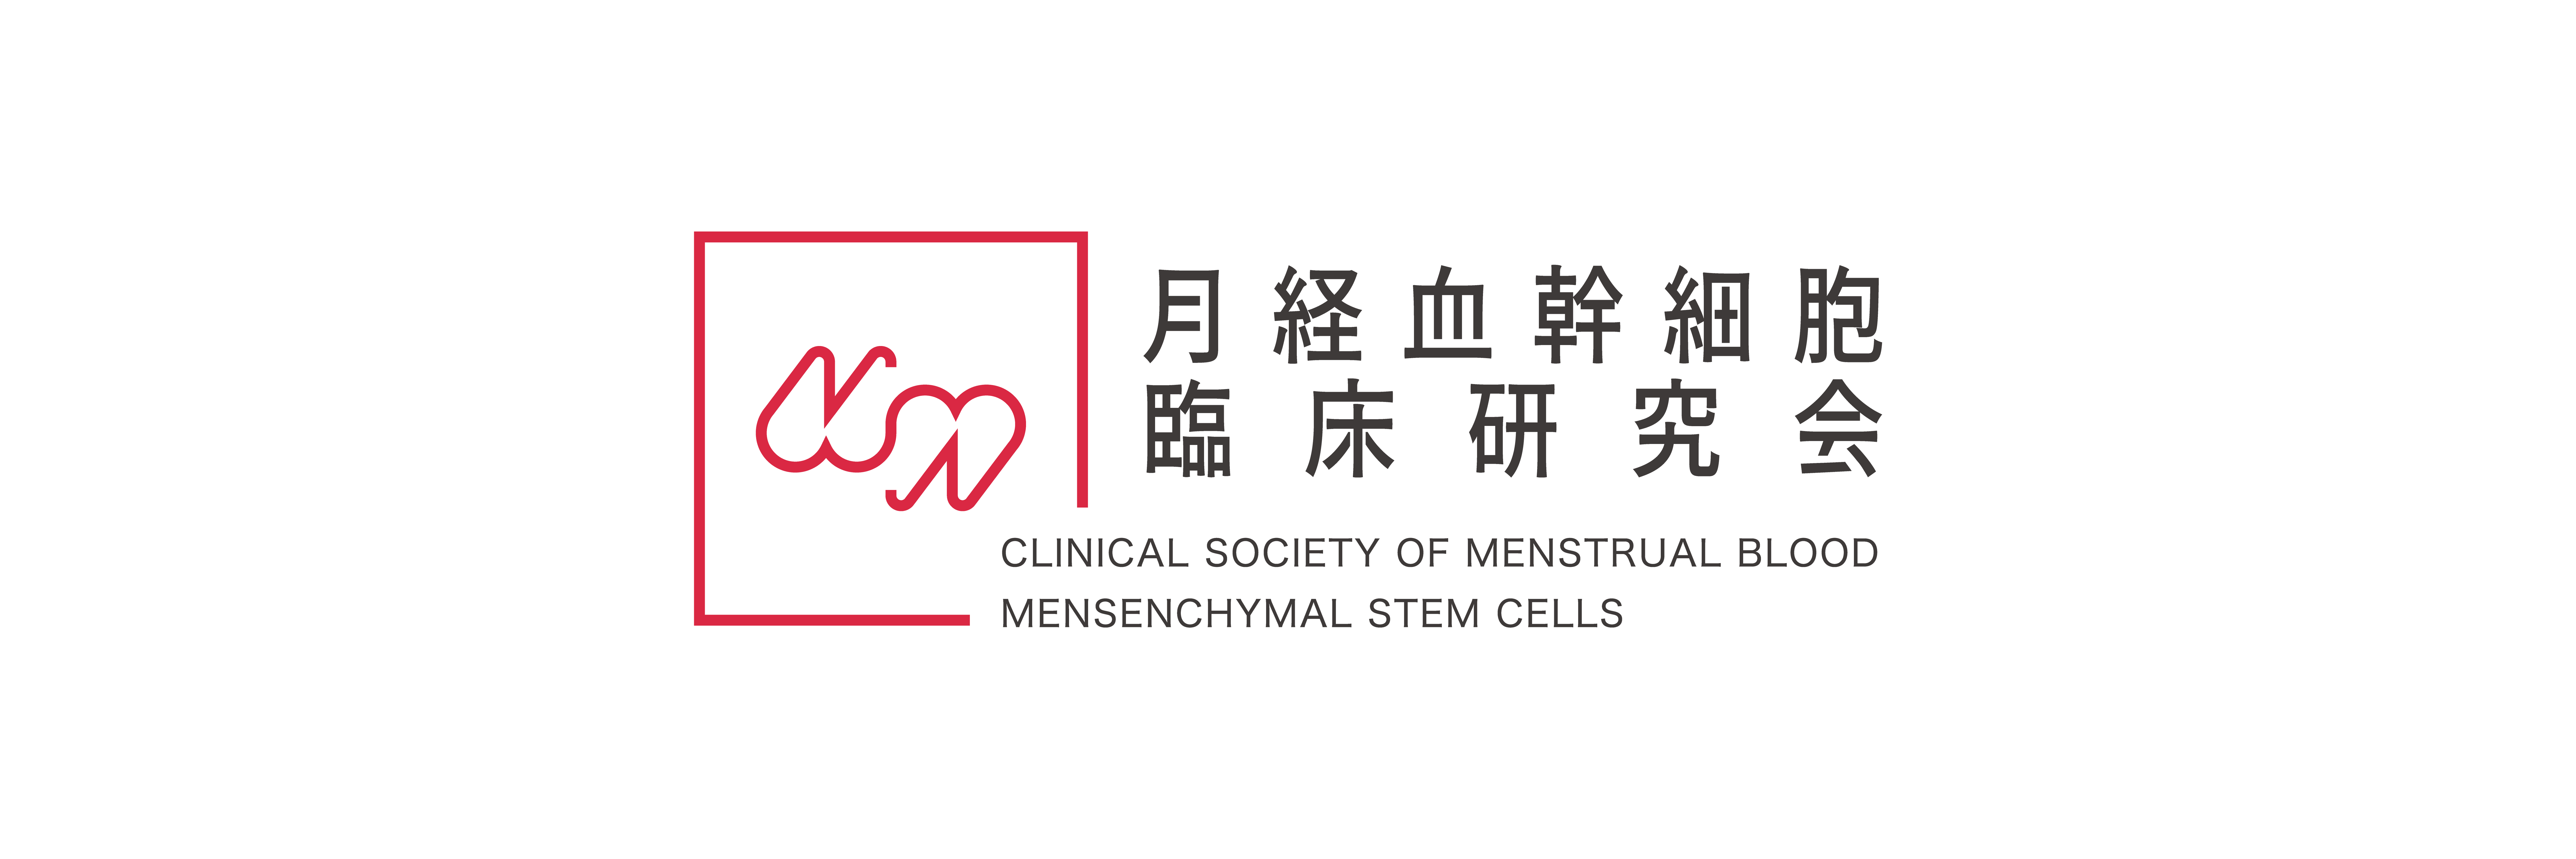 月経血幹細胞臨床研究会 MenSC